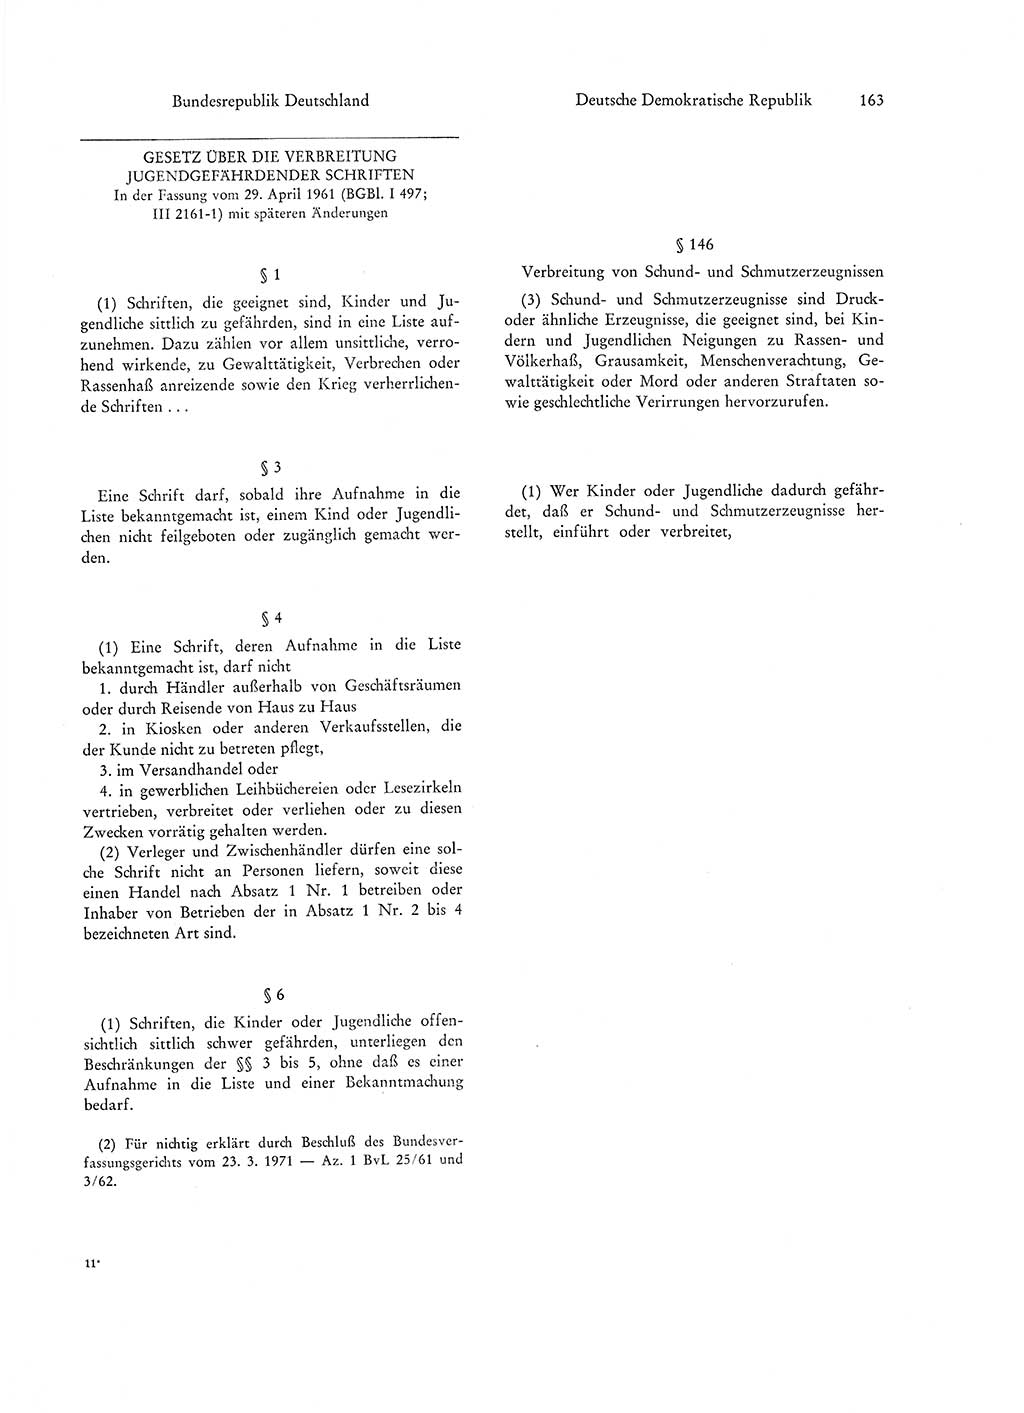 Strafgesetzgebung in Deutschland [Bundesrepublik Deutschland (BRD) und Deutsche Demokratische Republik (DDR)] 1972, Seite 163 (Str.-Ges. Dtl. StGB BRD DDR 1972, S. 163)